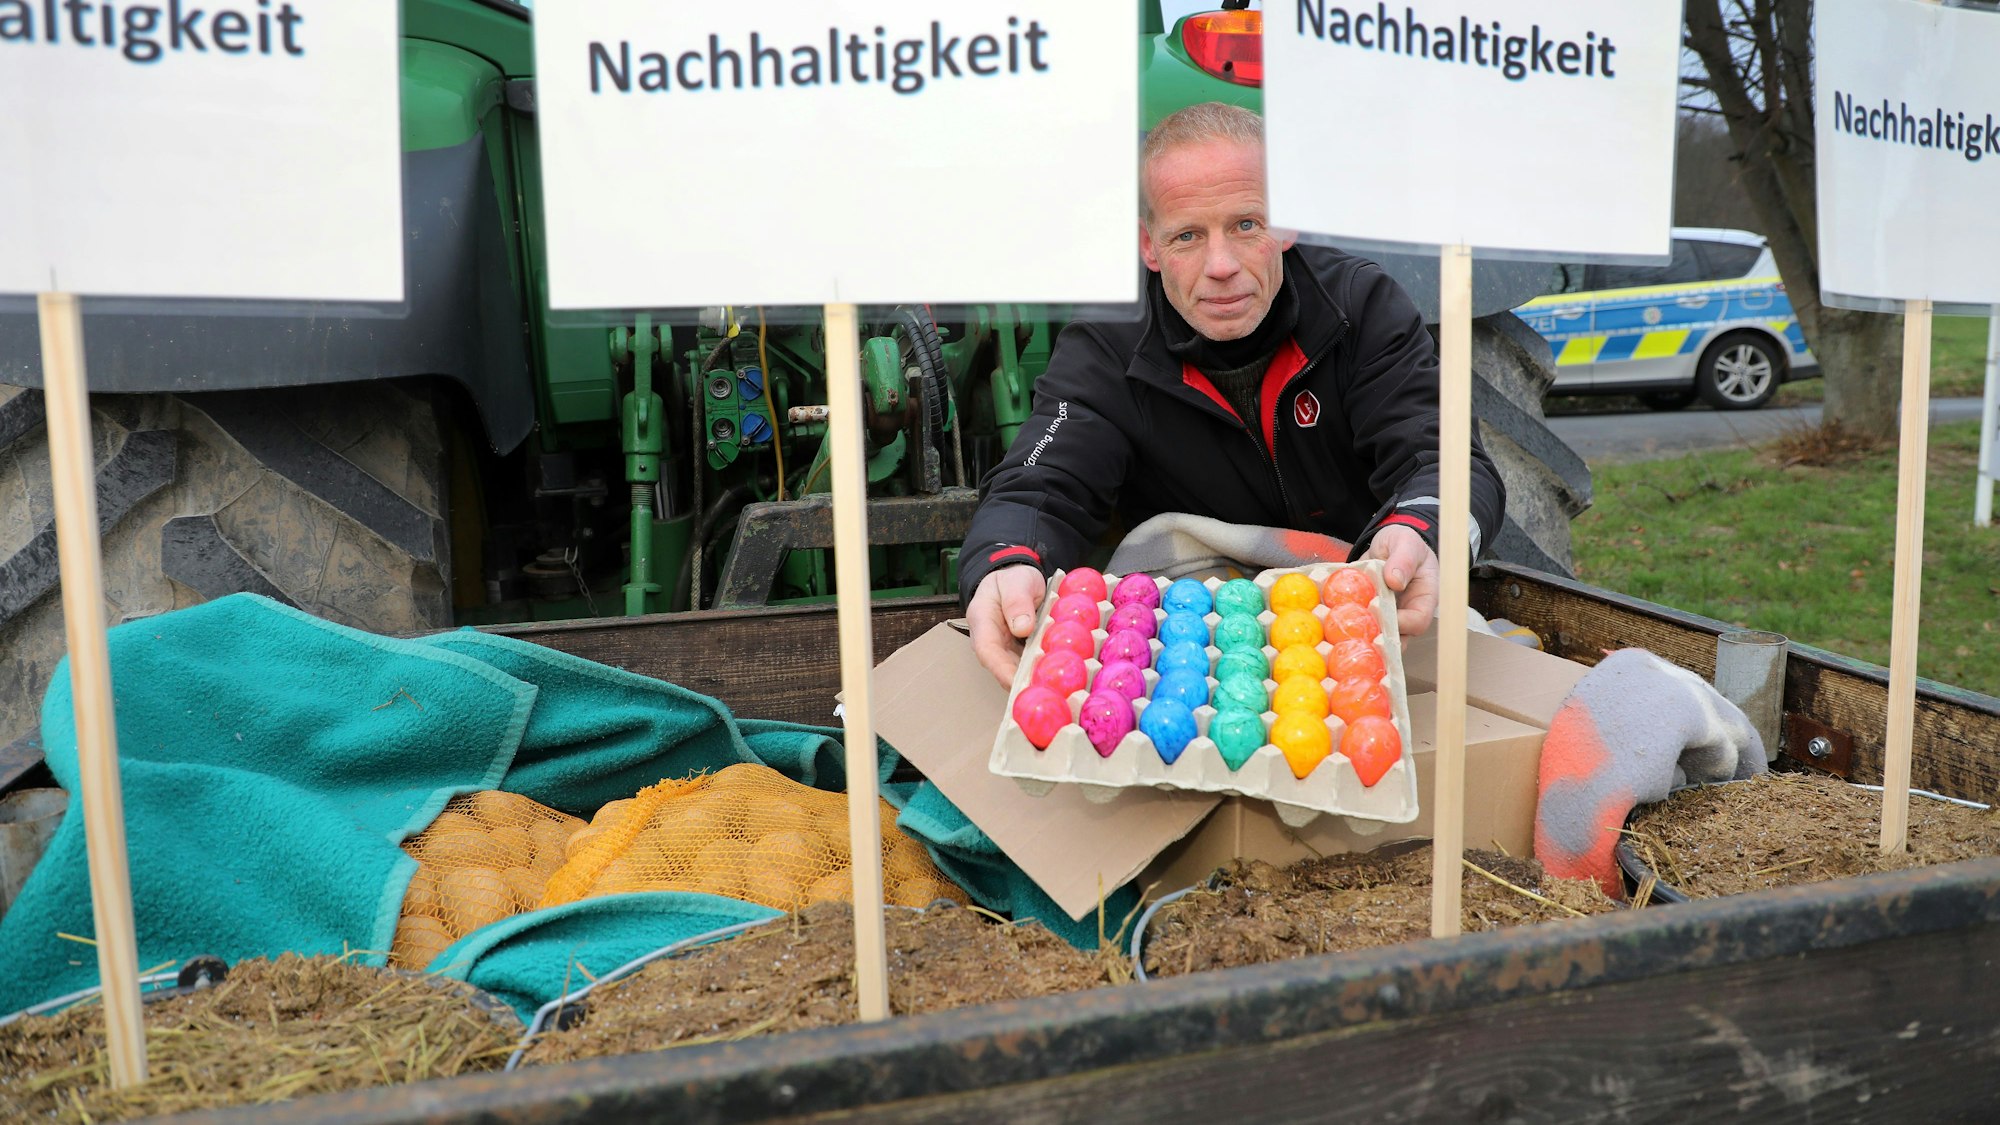 Landwirt Markus Freihoff zeigt Eier und Kartoffeln auf der Ladekiste seines Traktors.